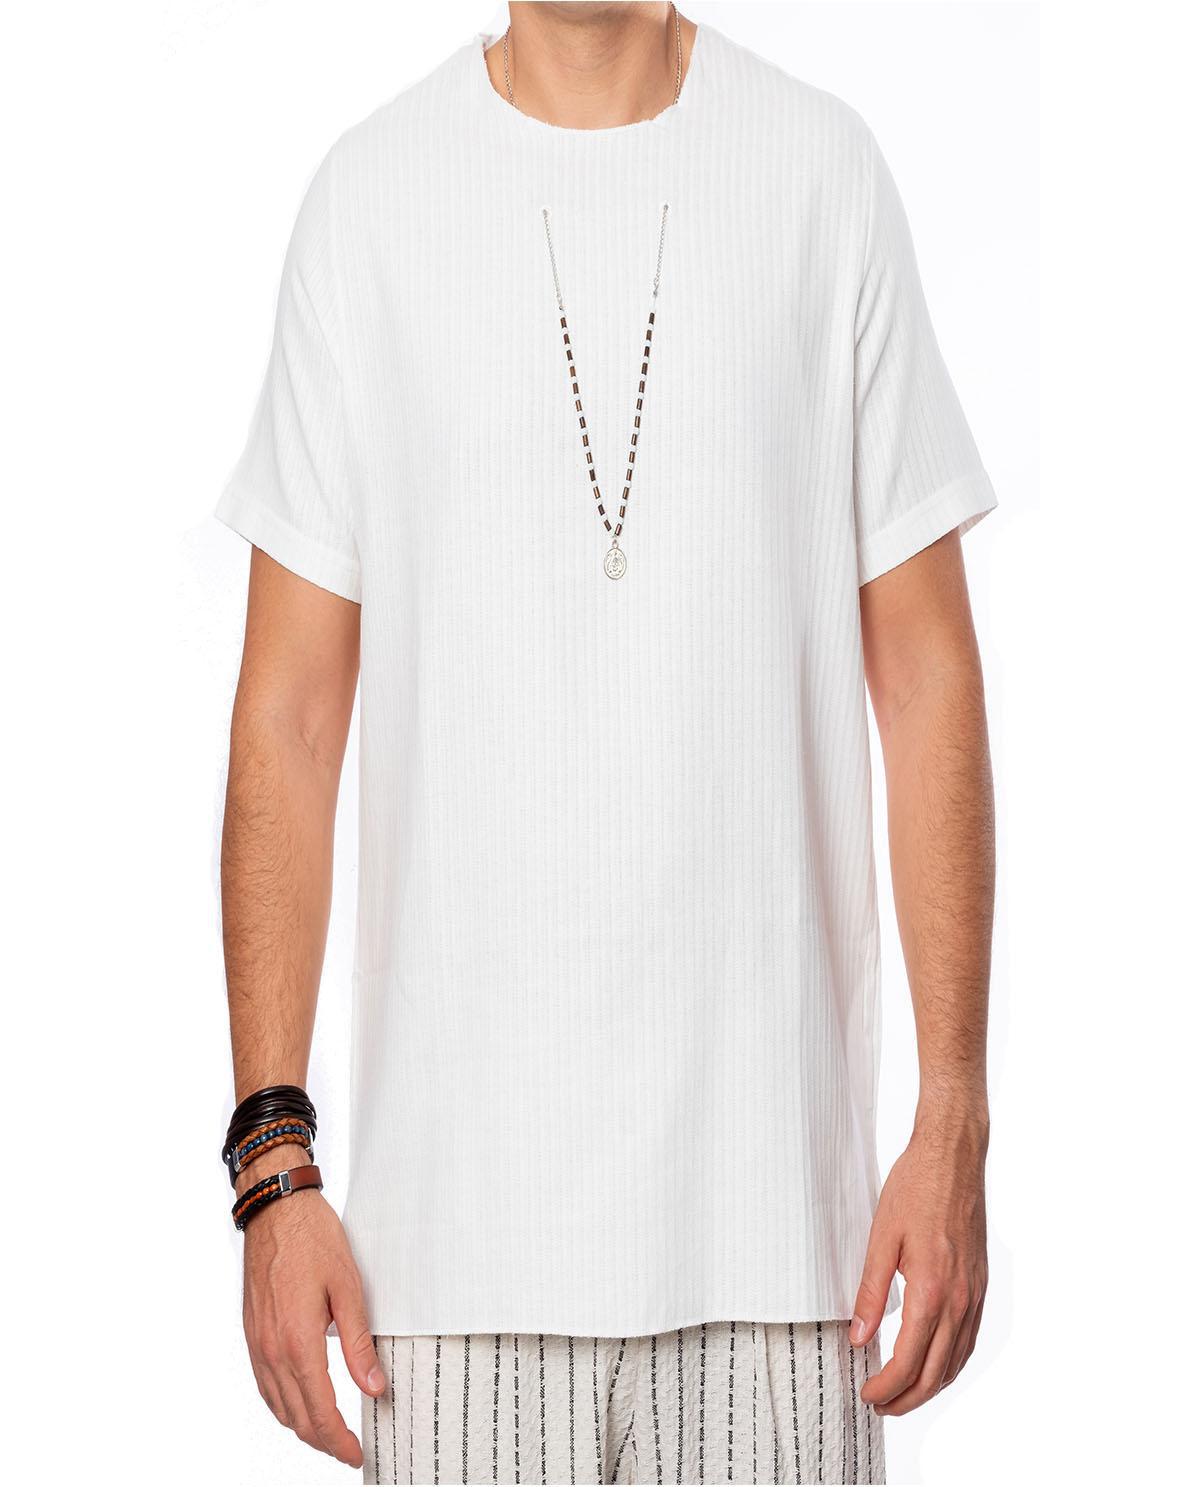 T-shirt manches courtes blanc avec accessoire en coton